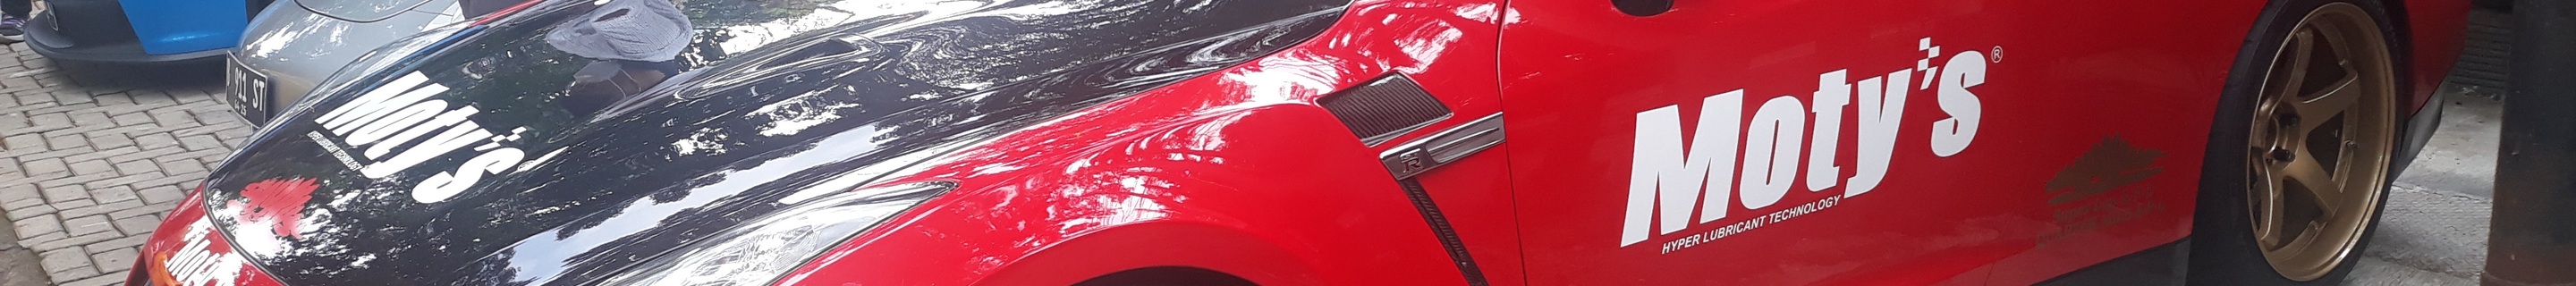 Nissan GT-R Garage Saurus